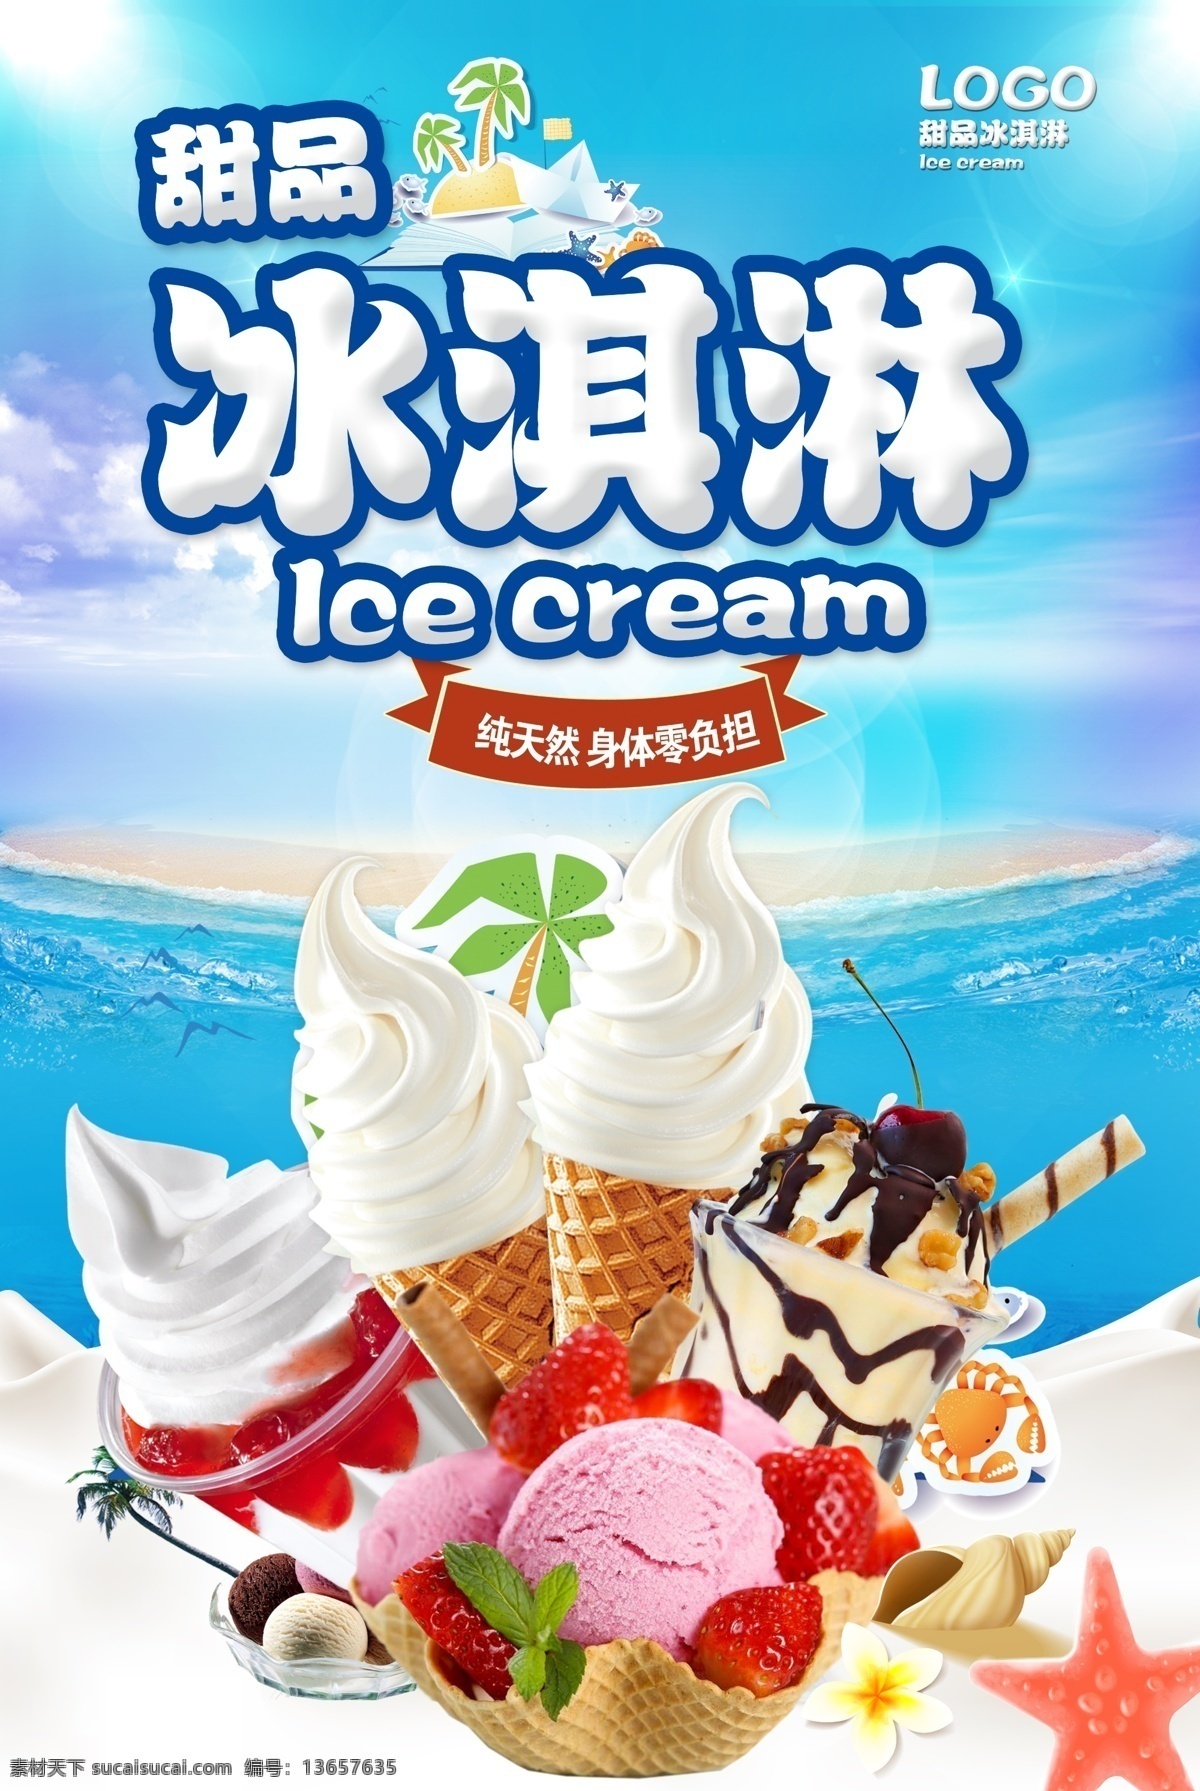 冰淇淋 海报 冰淇淋海报 冰淇淋灯箱 冰淇淋图片 冷饮海报 冰淇淋招贴 冰淇淋彩图 冰淇淋模板 冰淇淋高清图 冰淇淋设计 冰淇淋设计图 冰淇淋开业 冰淇淋灯箱片 免费模版